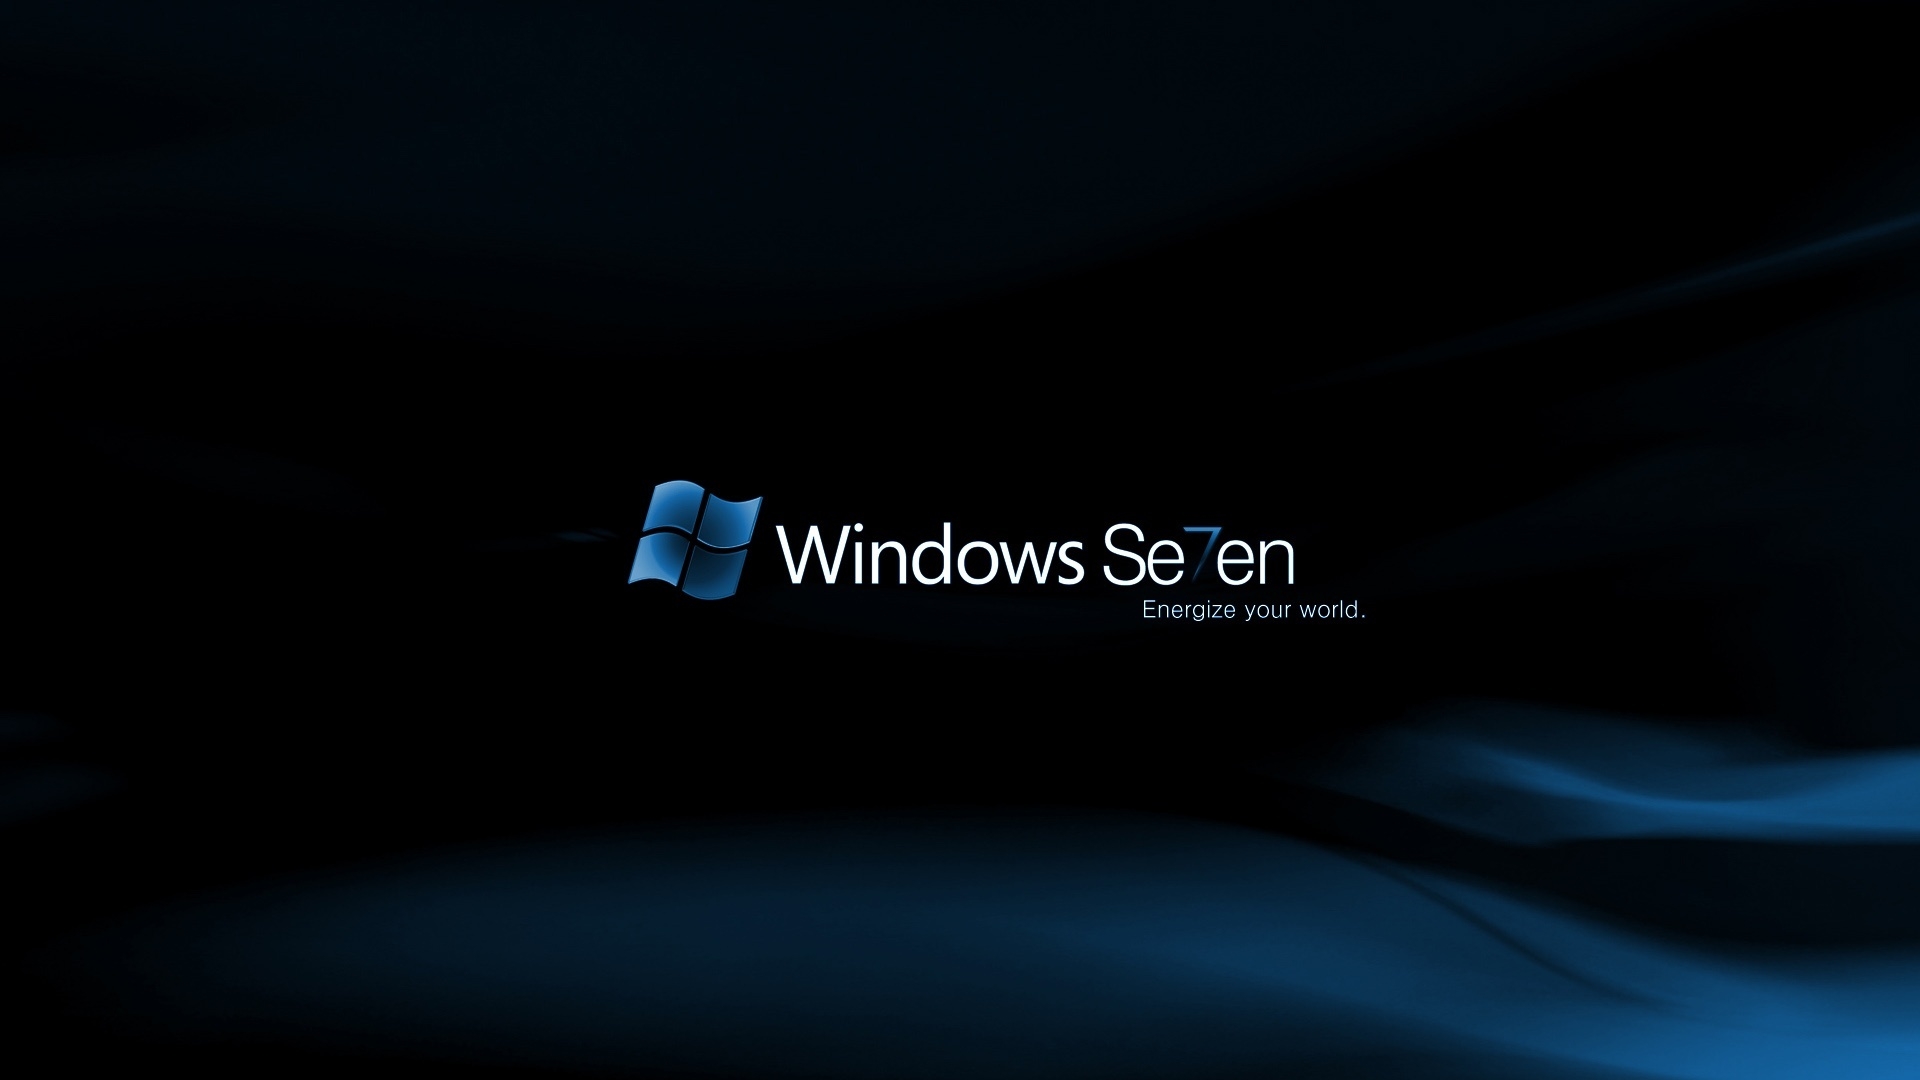 Windows Se7en Midnight for 1920 x 1080 HDTV 1080p resolution